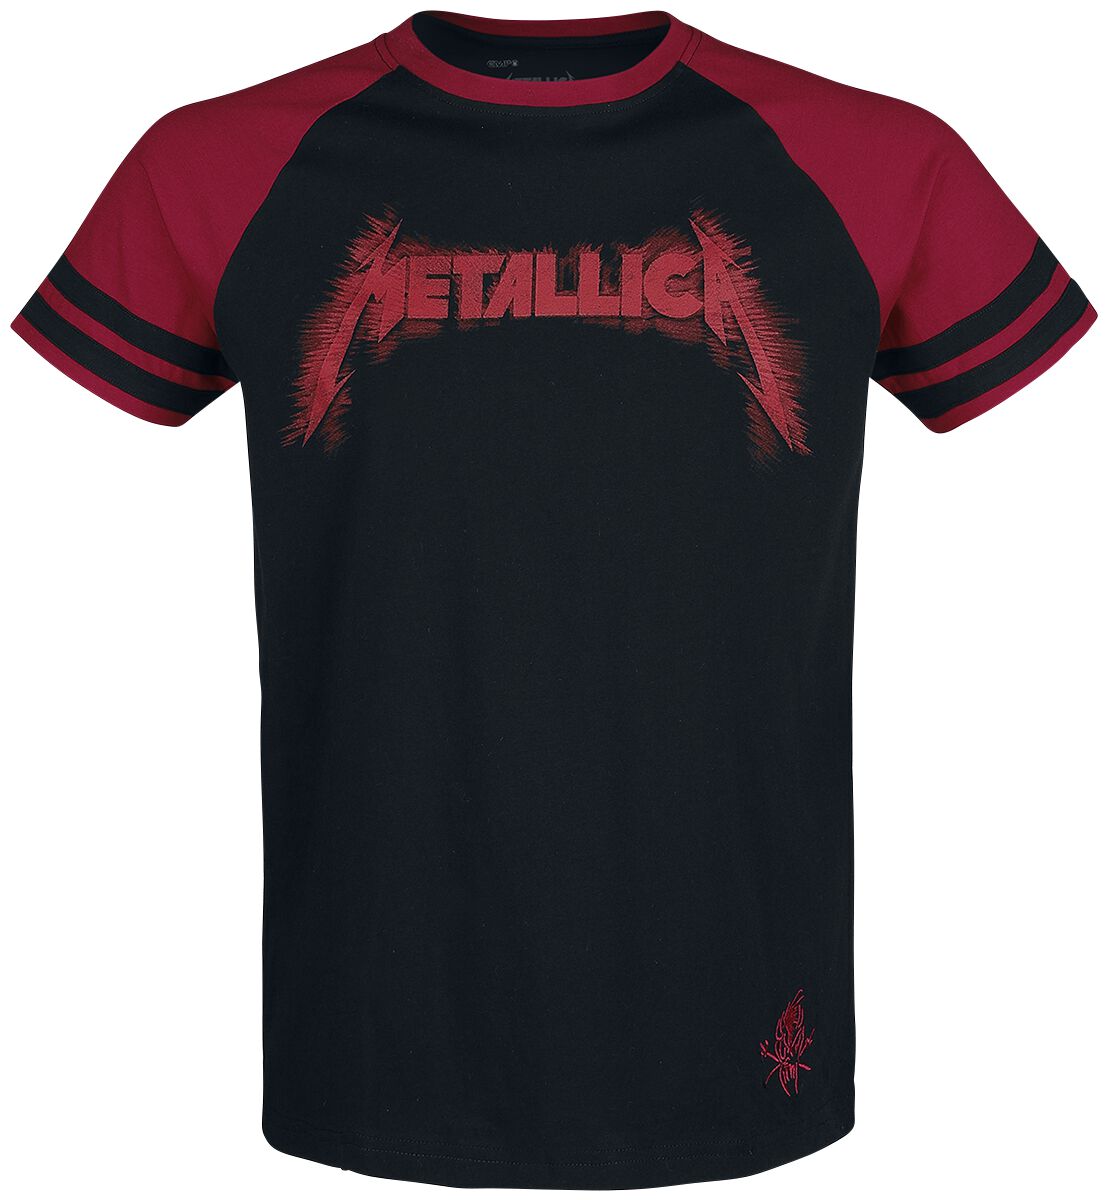 Metallica T-Shirt - EMP Signature Collection - M bis 3XL - für Männer - Größe XL - schwarz/rot  - EMP exklusives Merchandise!